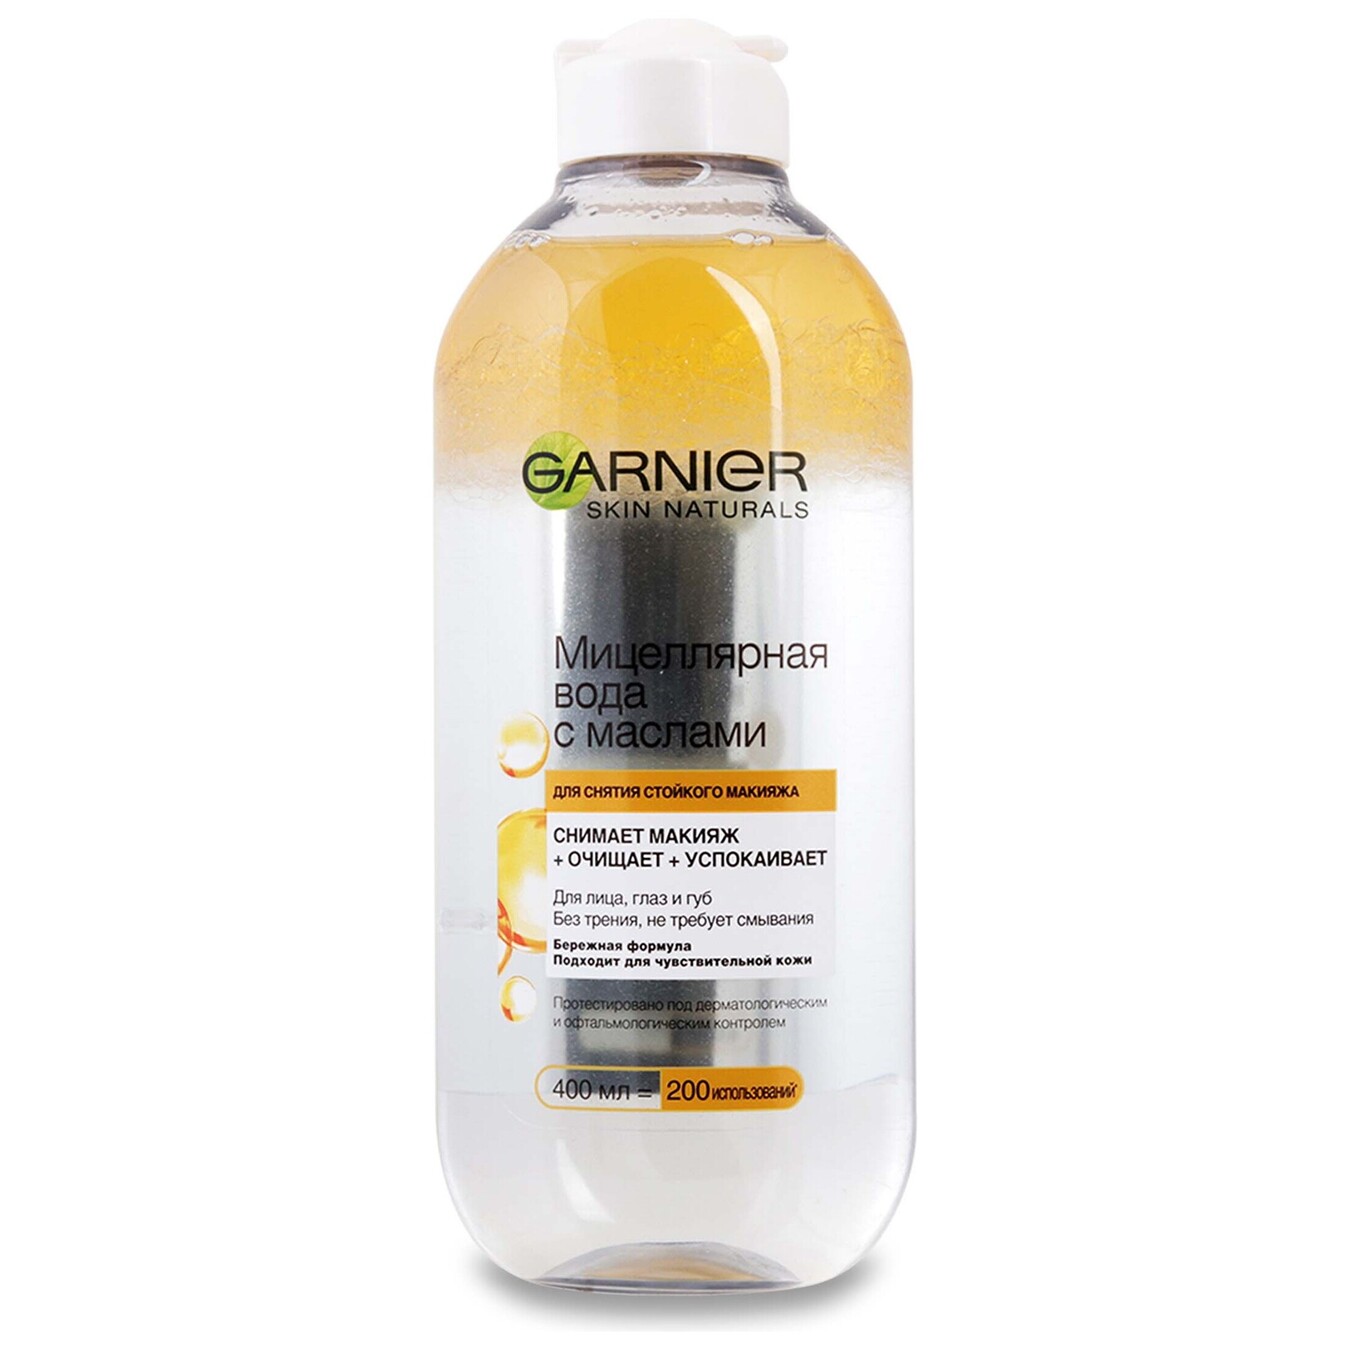 Garnier micellar water with oils 400 ml